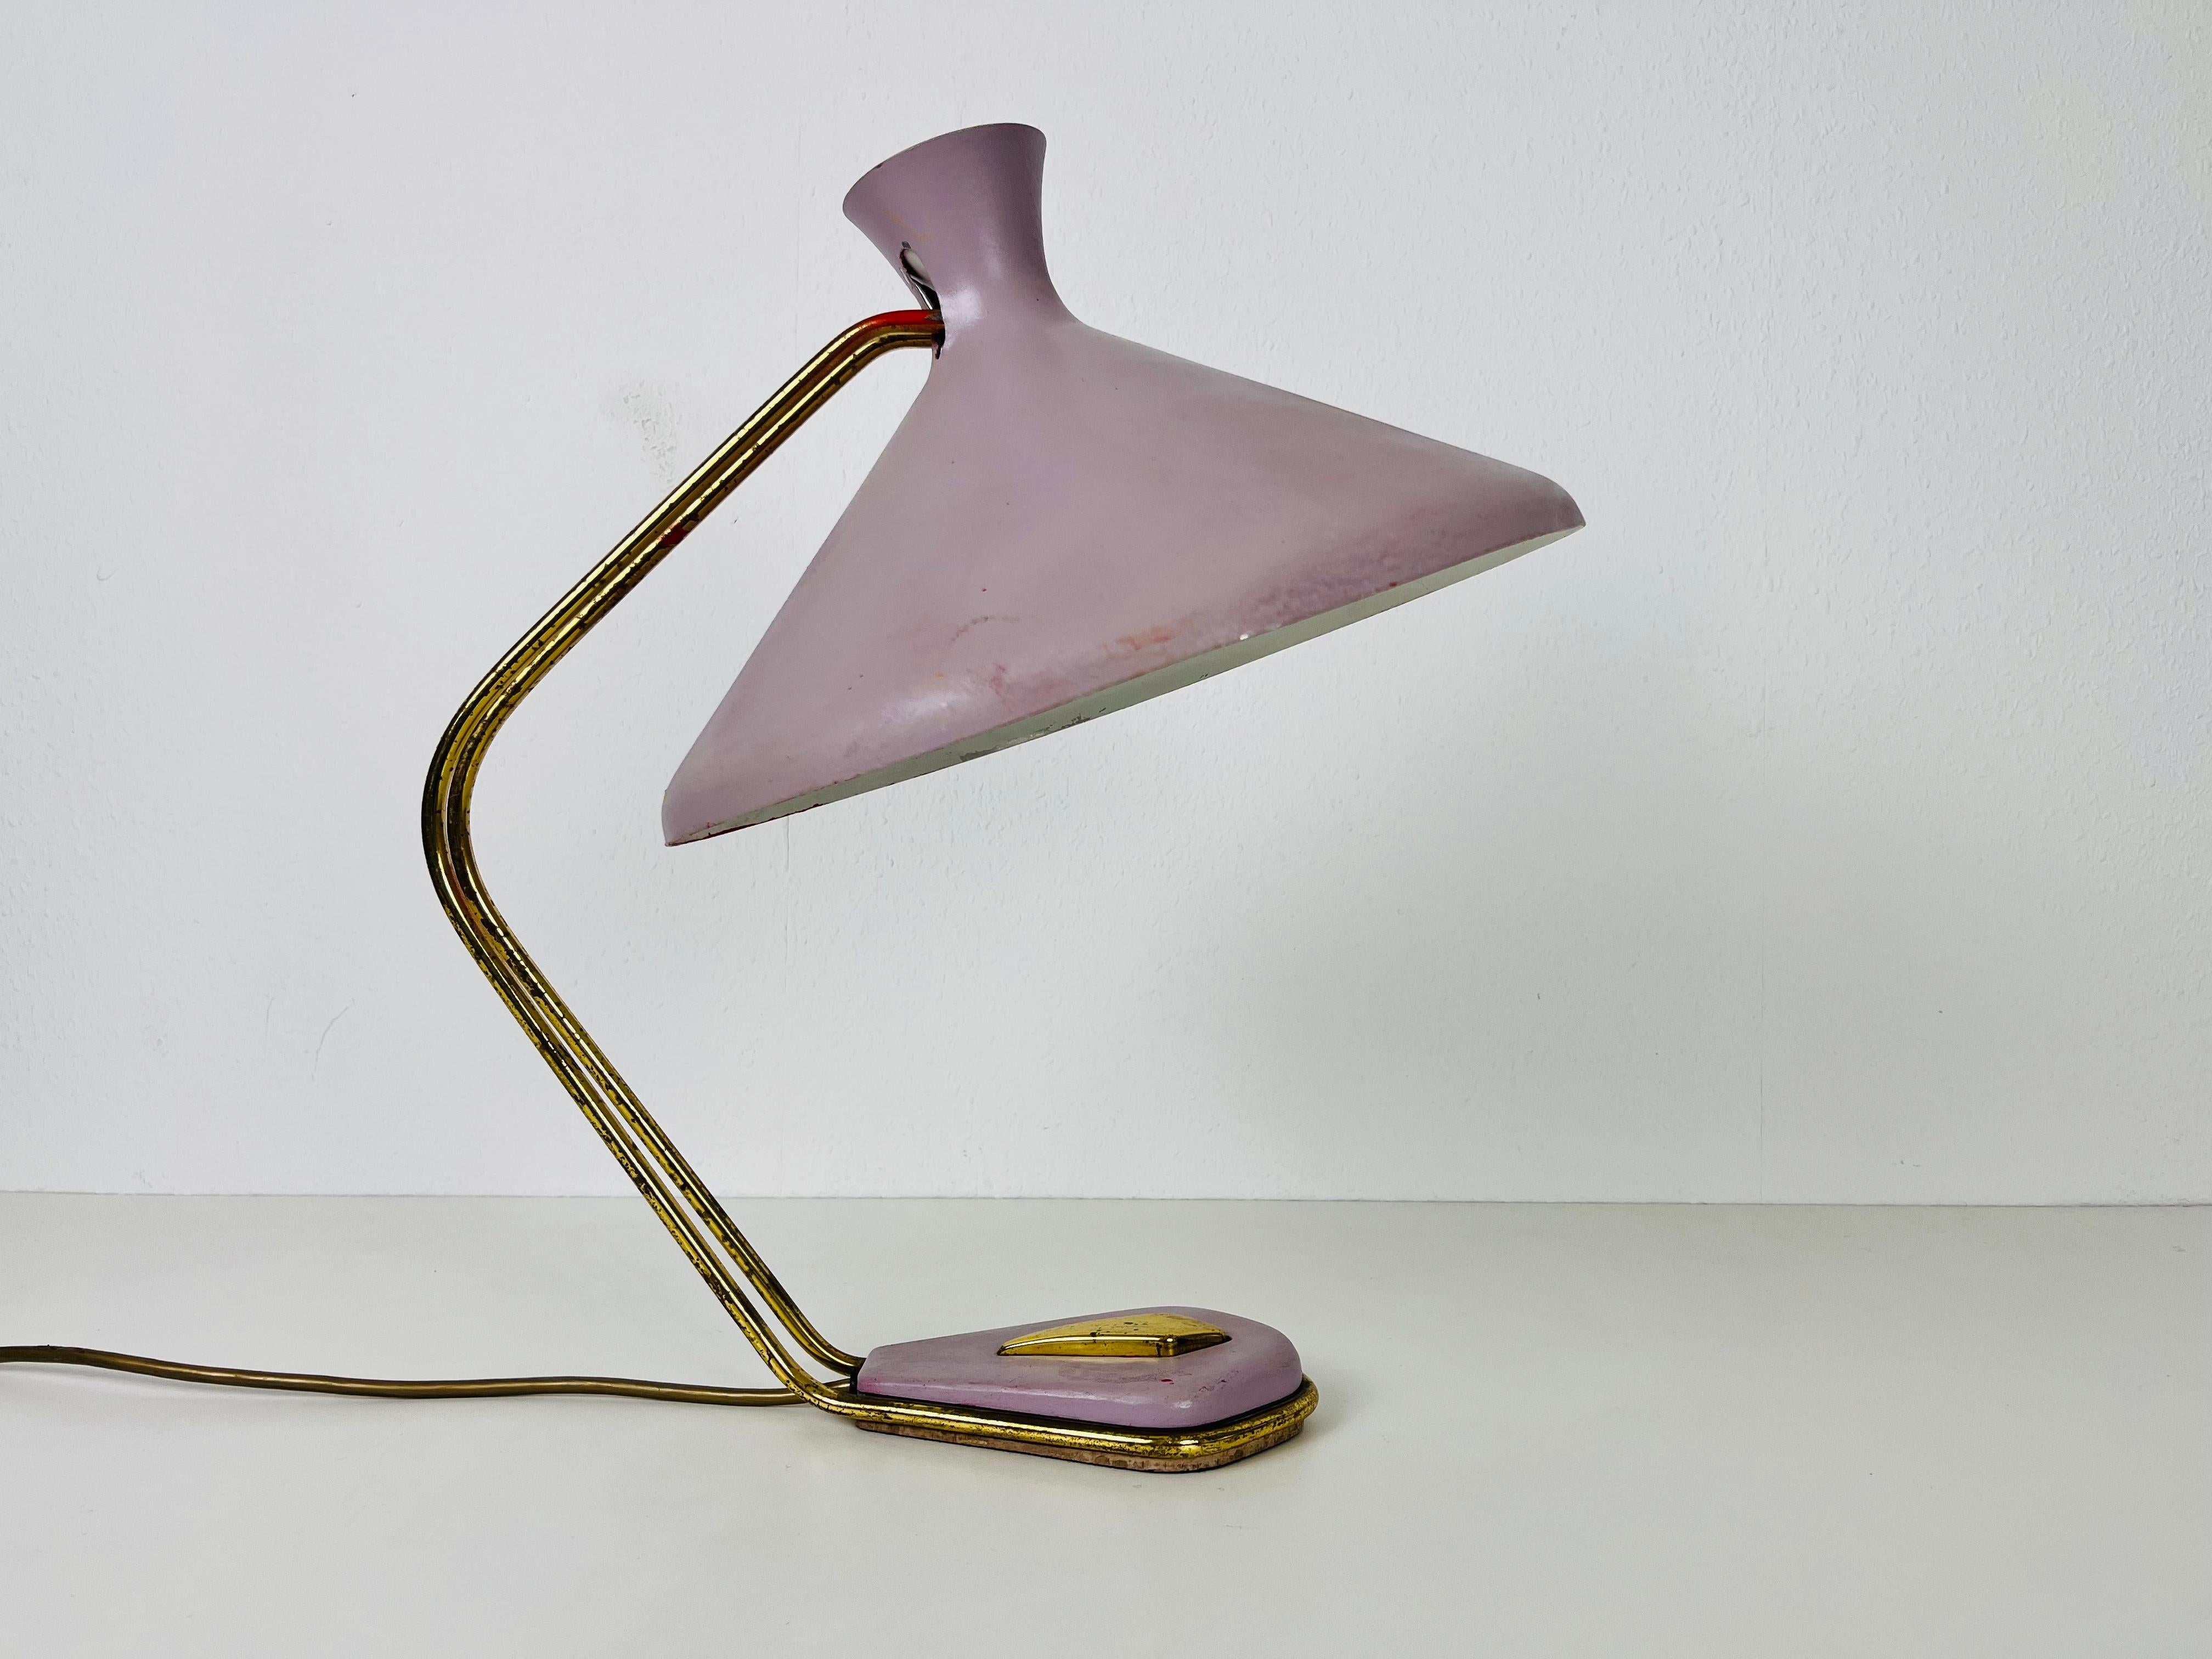 Une lampe de table italienne fabriquée dans les années 1960. L'éclairage a un design exceptionnel qui ressemble aux lampes de table fabriquées par Stilnovo. Il est fabriqué en laiton avec un bel abat-jour en métal.

La lampe nécessite une ampoule